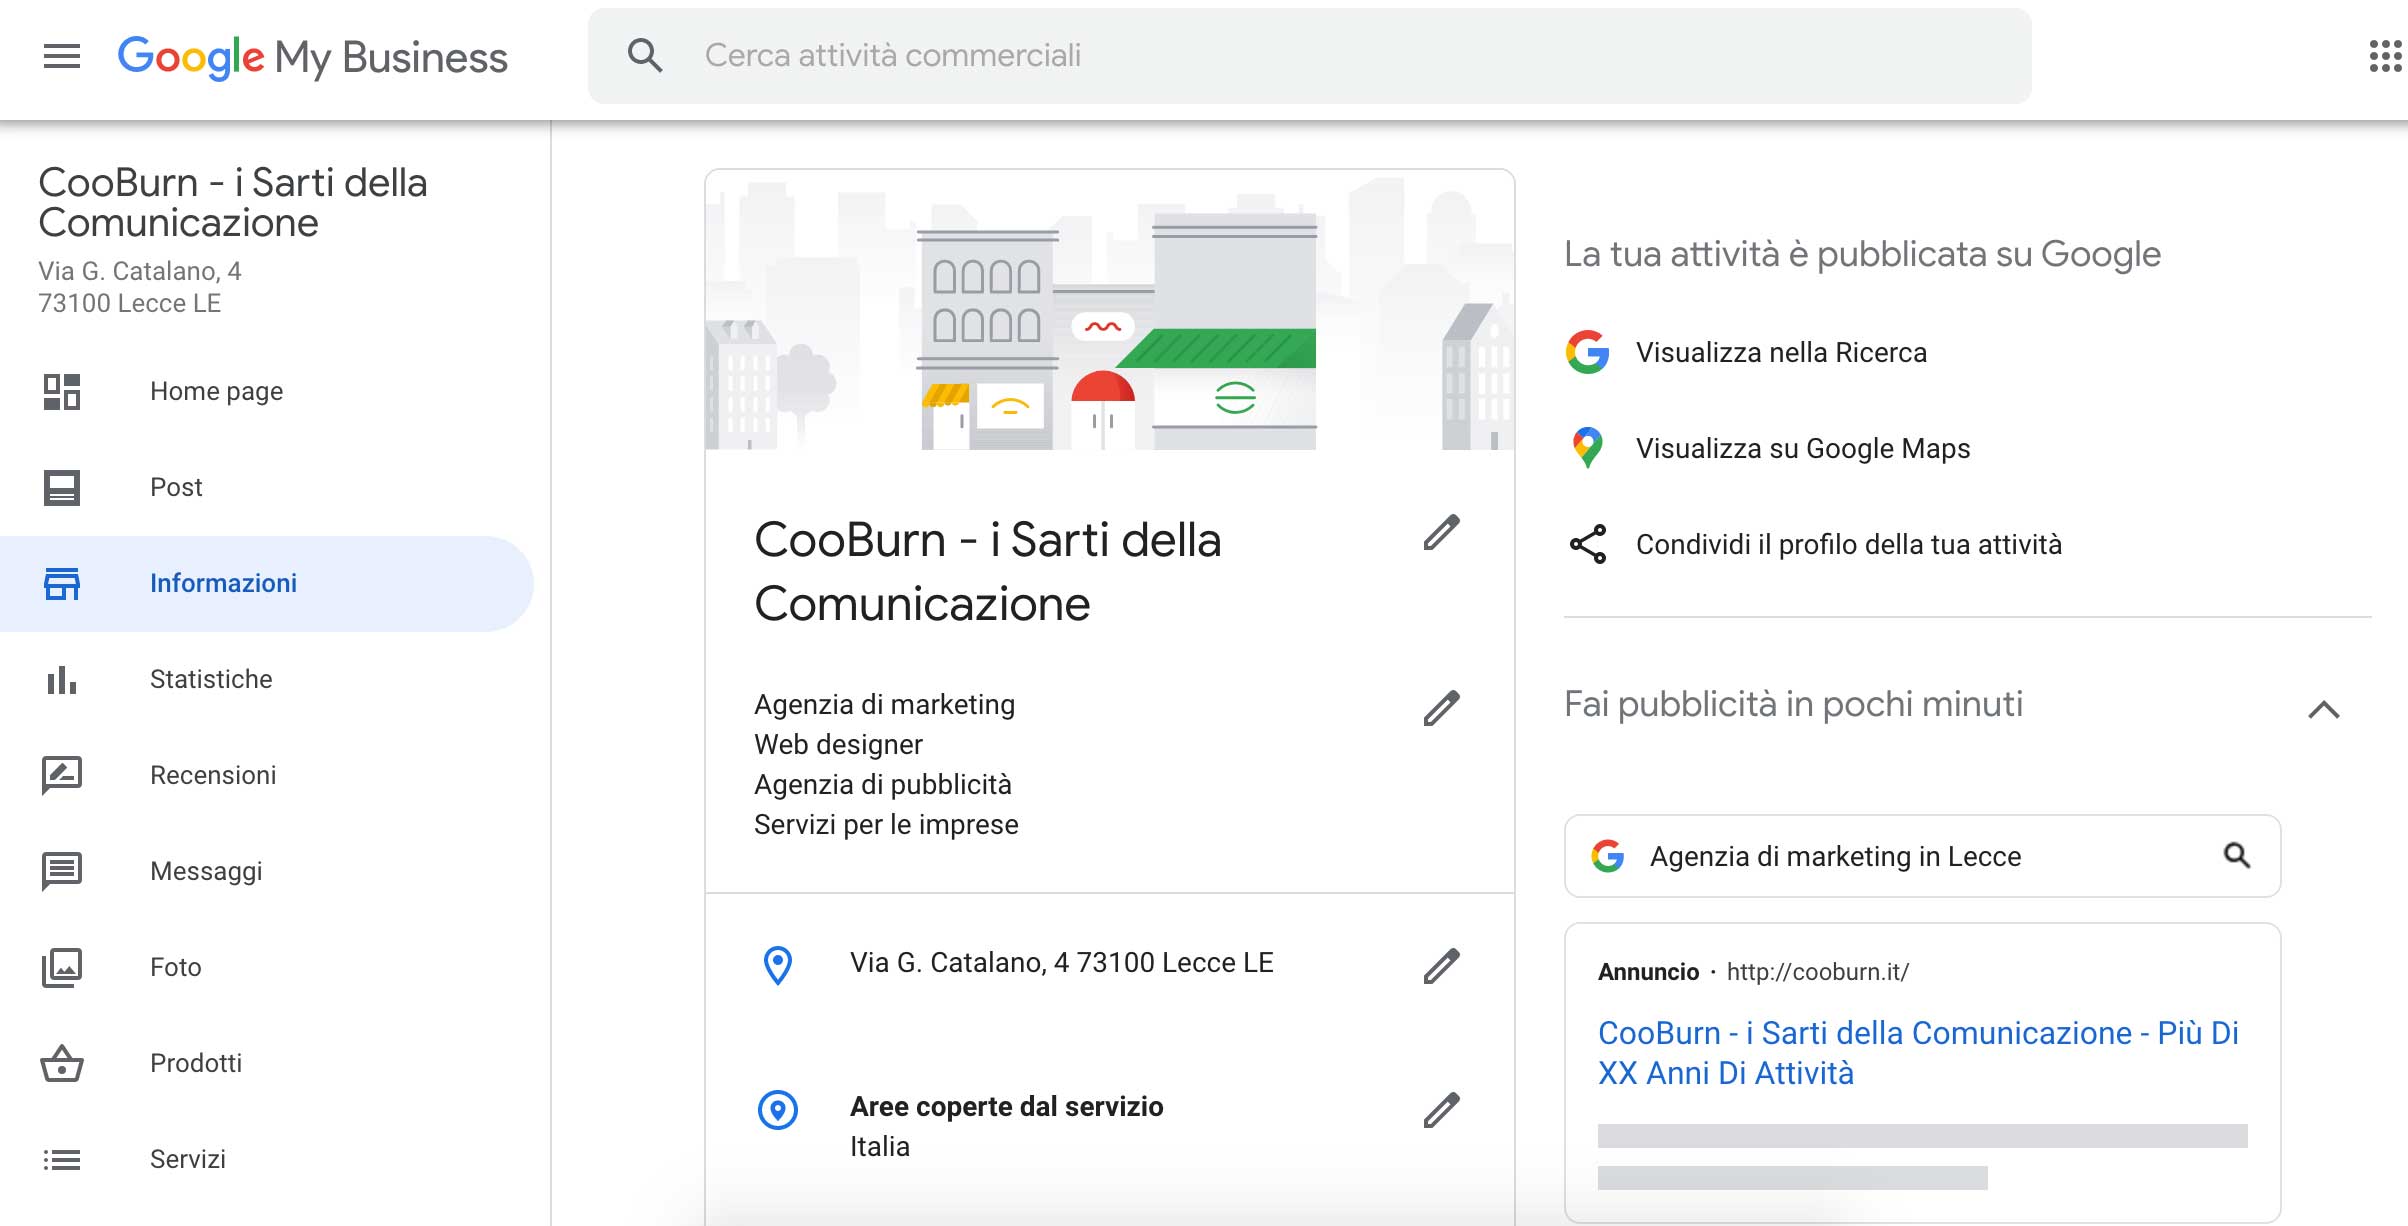 Google My Business - Esempio interfaccia utente